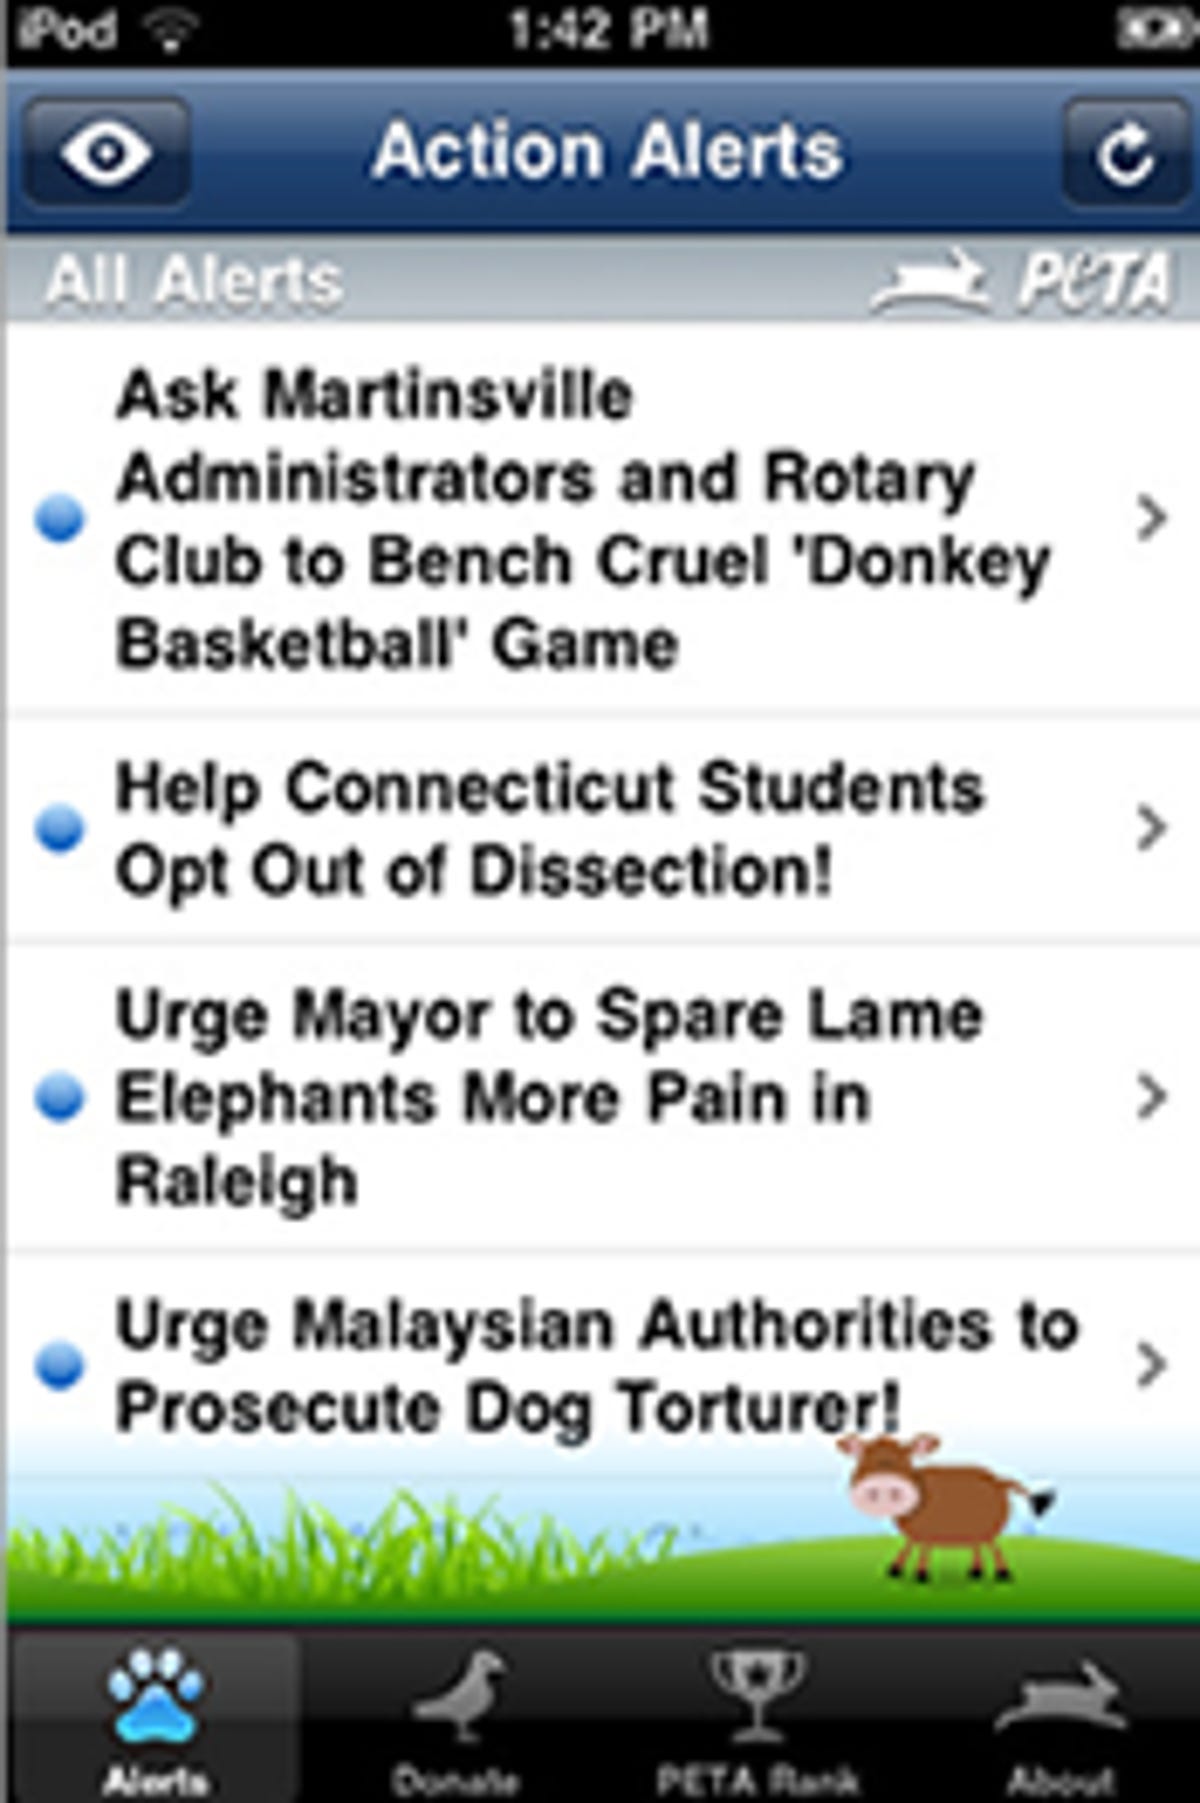 PETA's new iPhone app